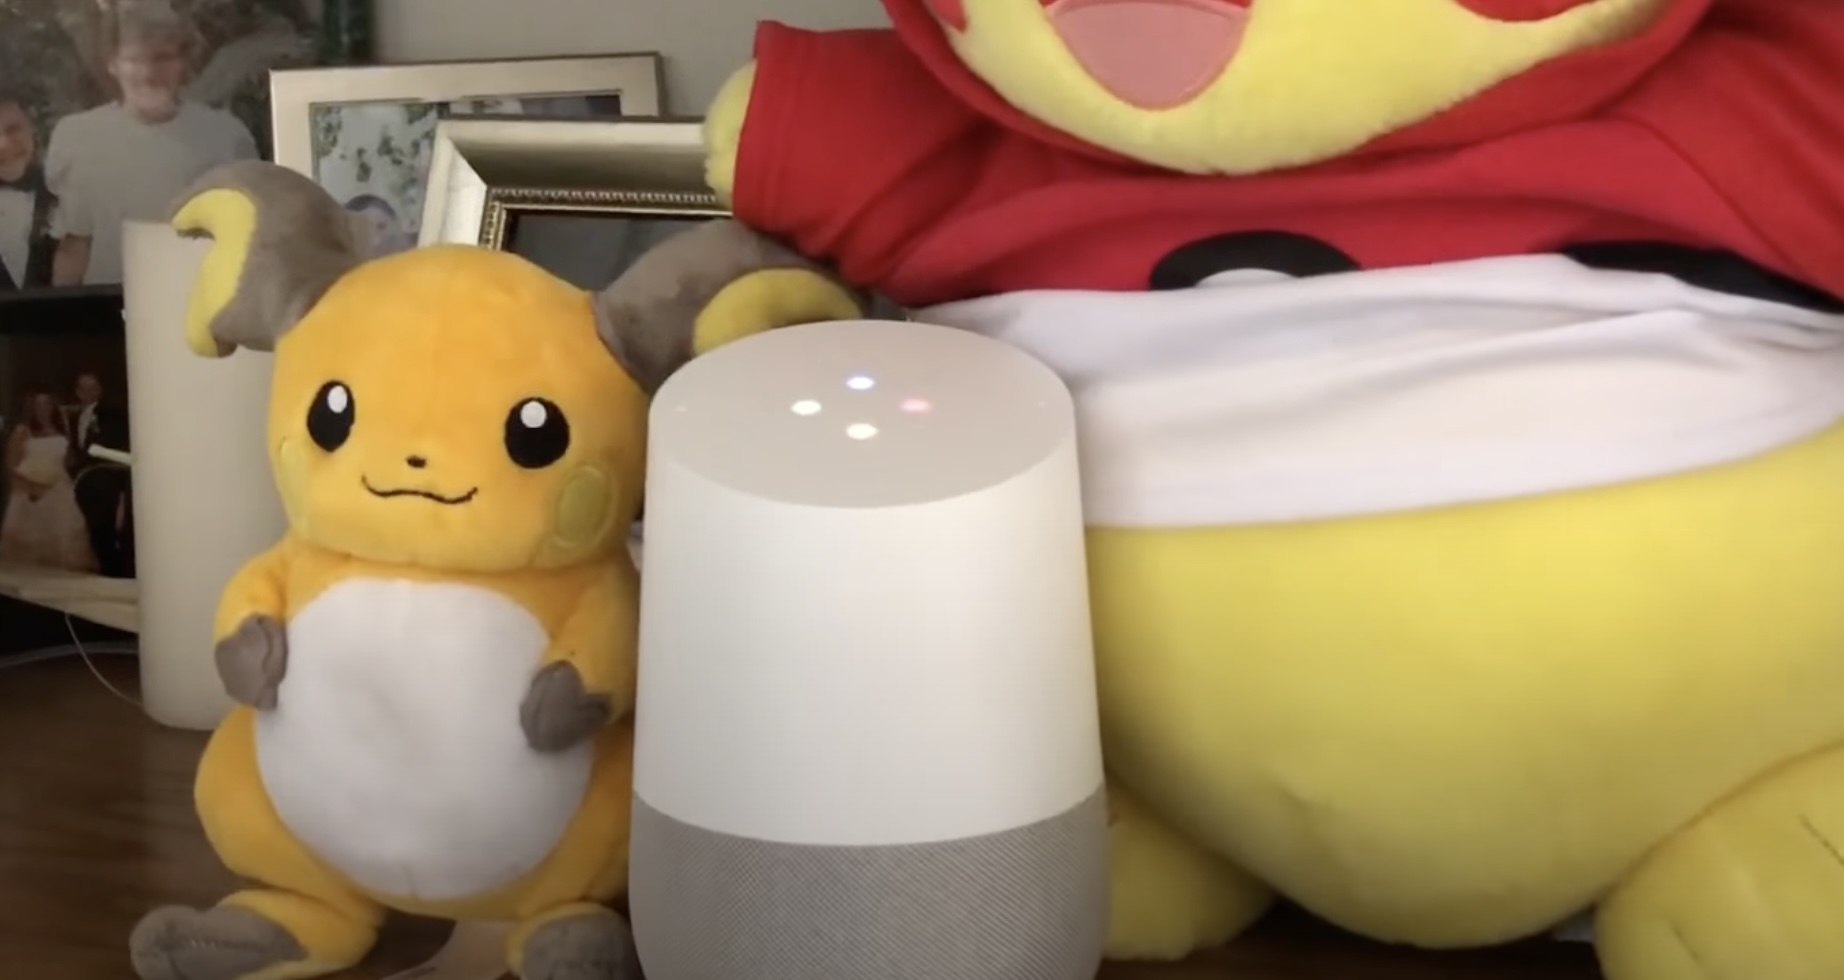 How To Make Alexa Talk Like Pikachu